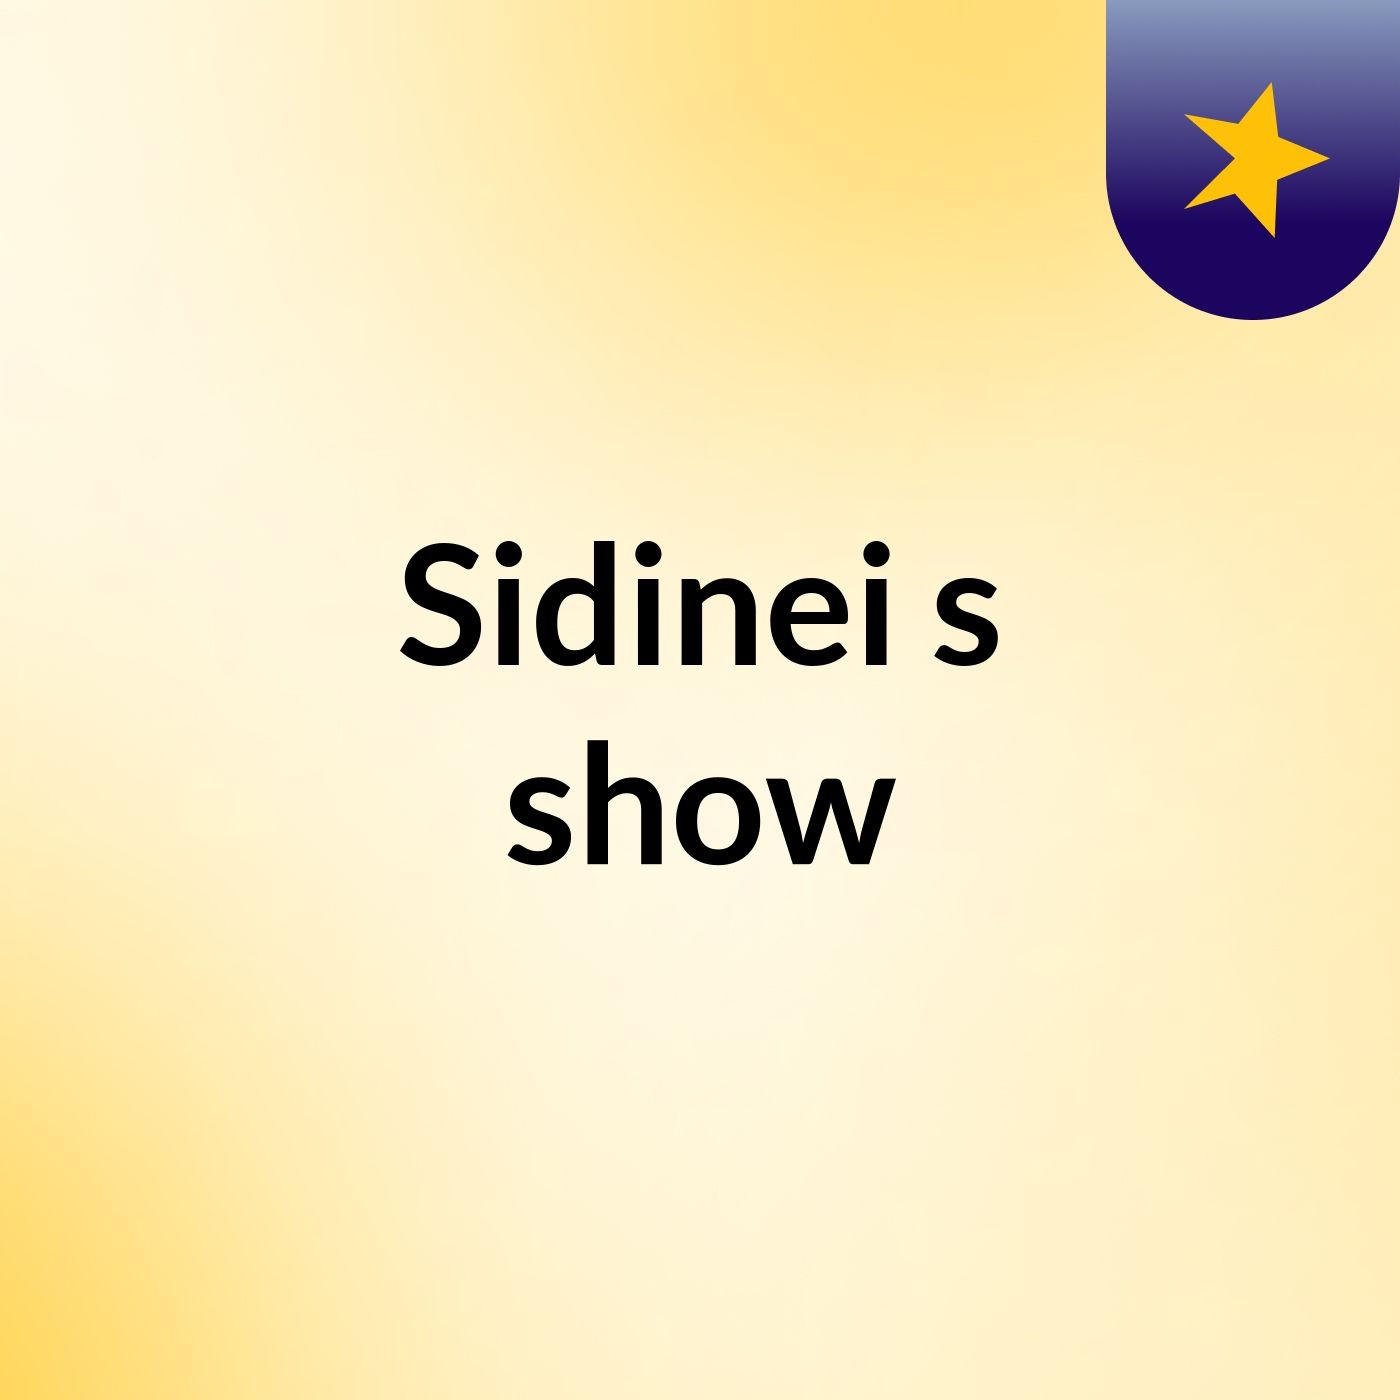 Sidinei's show